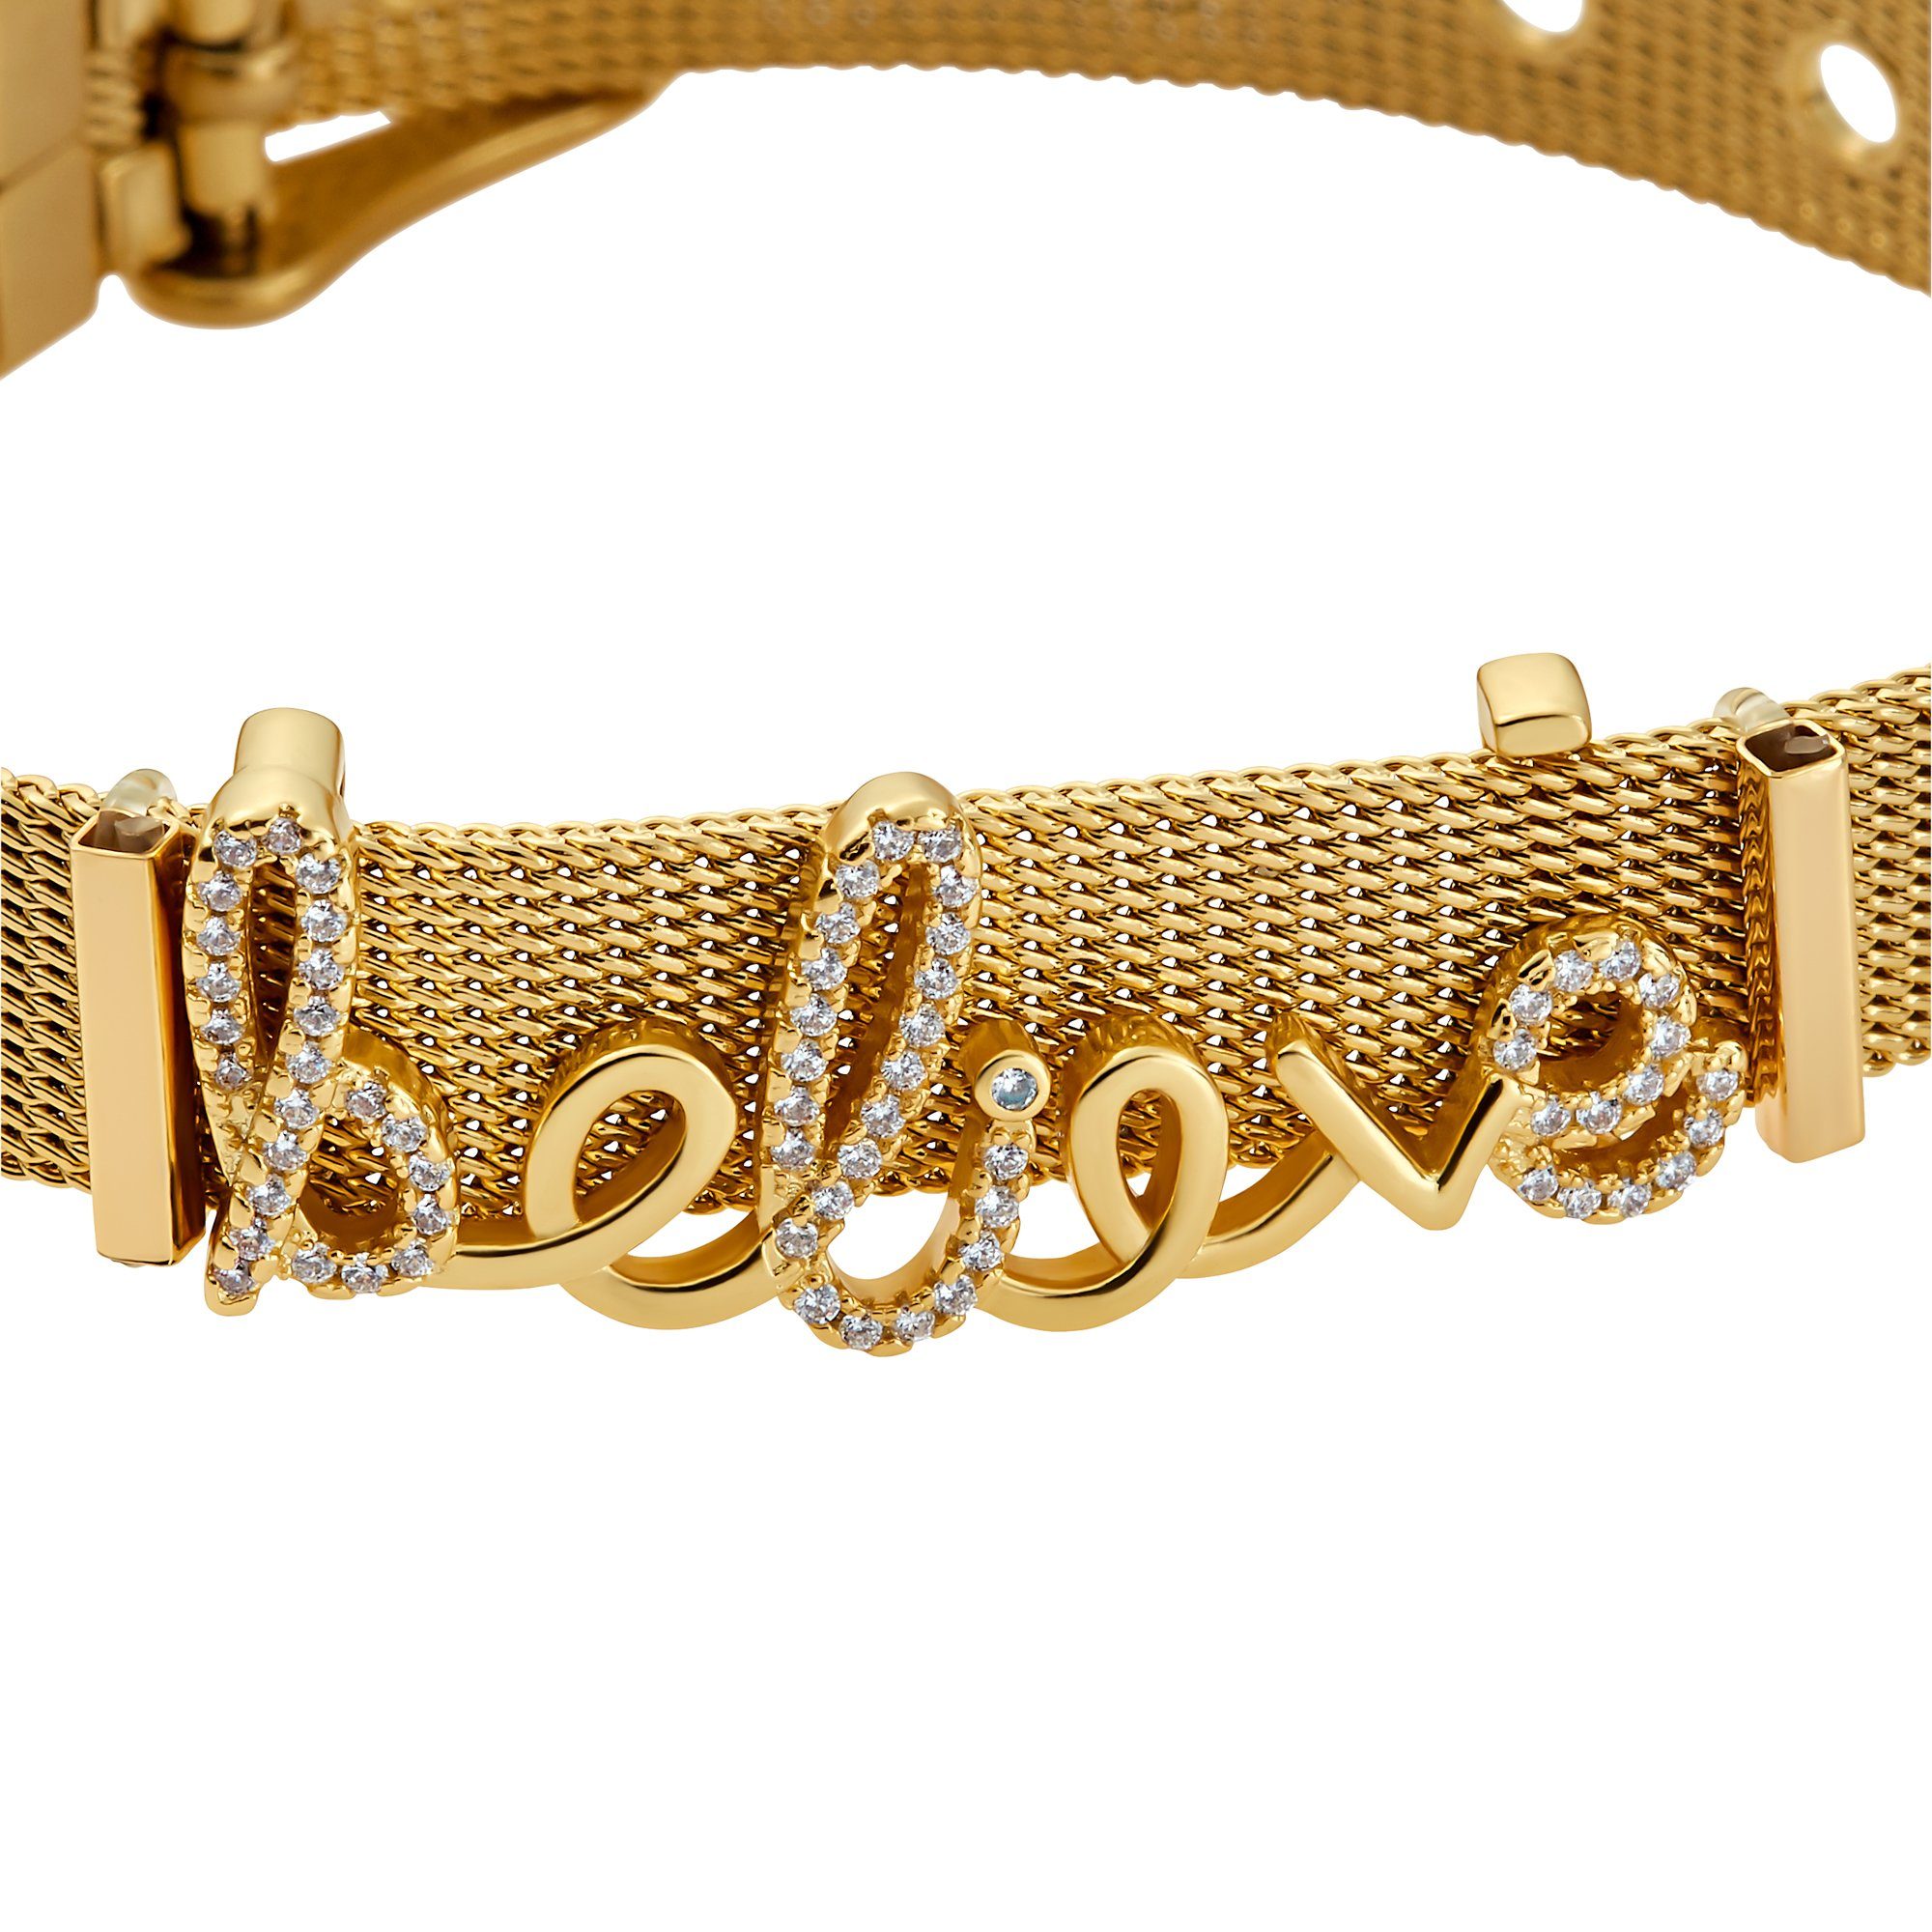 Charms sind poliert Armband (Armband, Armband Believe austauschbar inkl. Geschenkverpackung), Mesh Heideman goldfarben